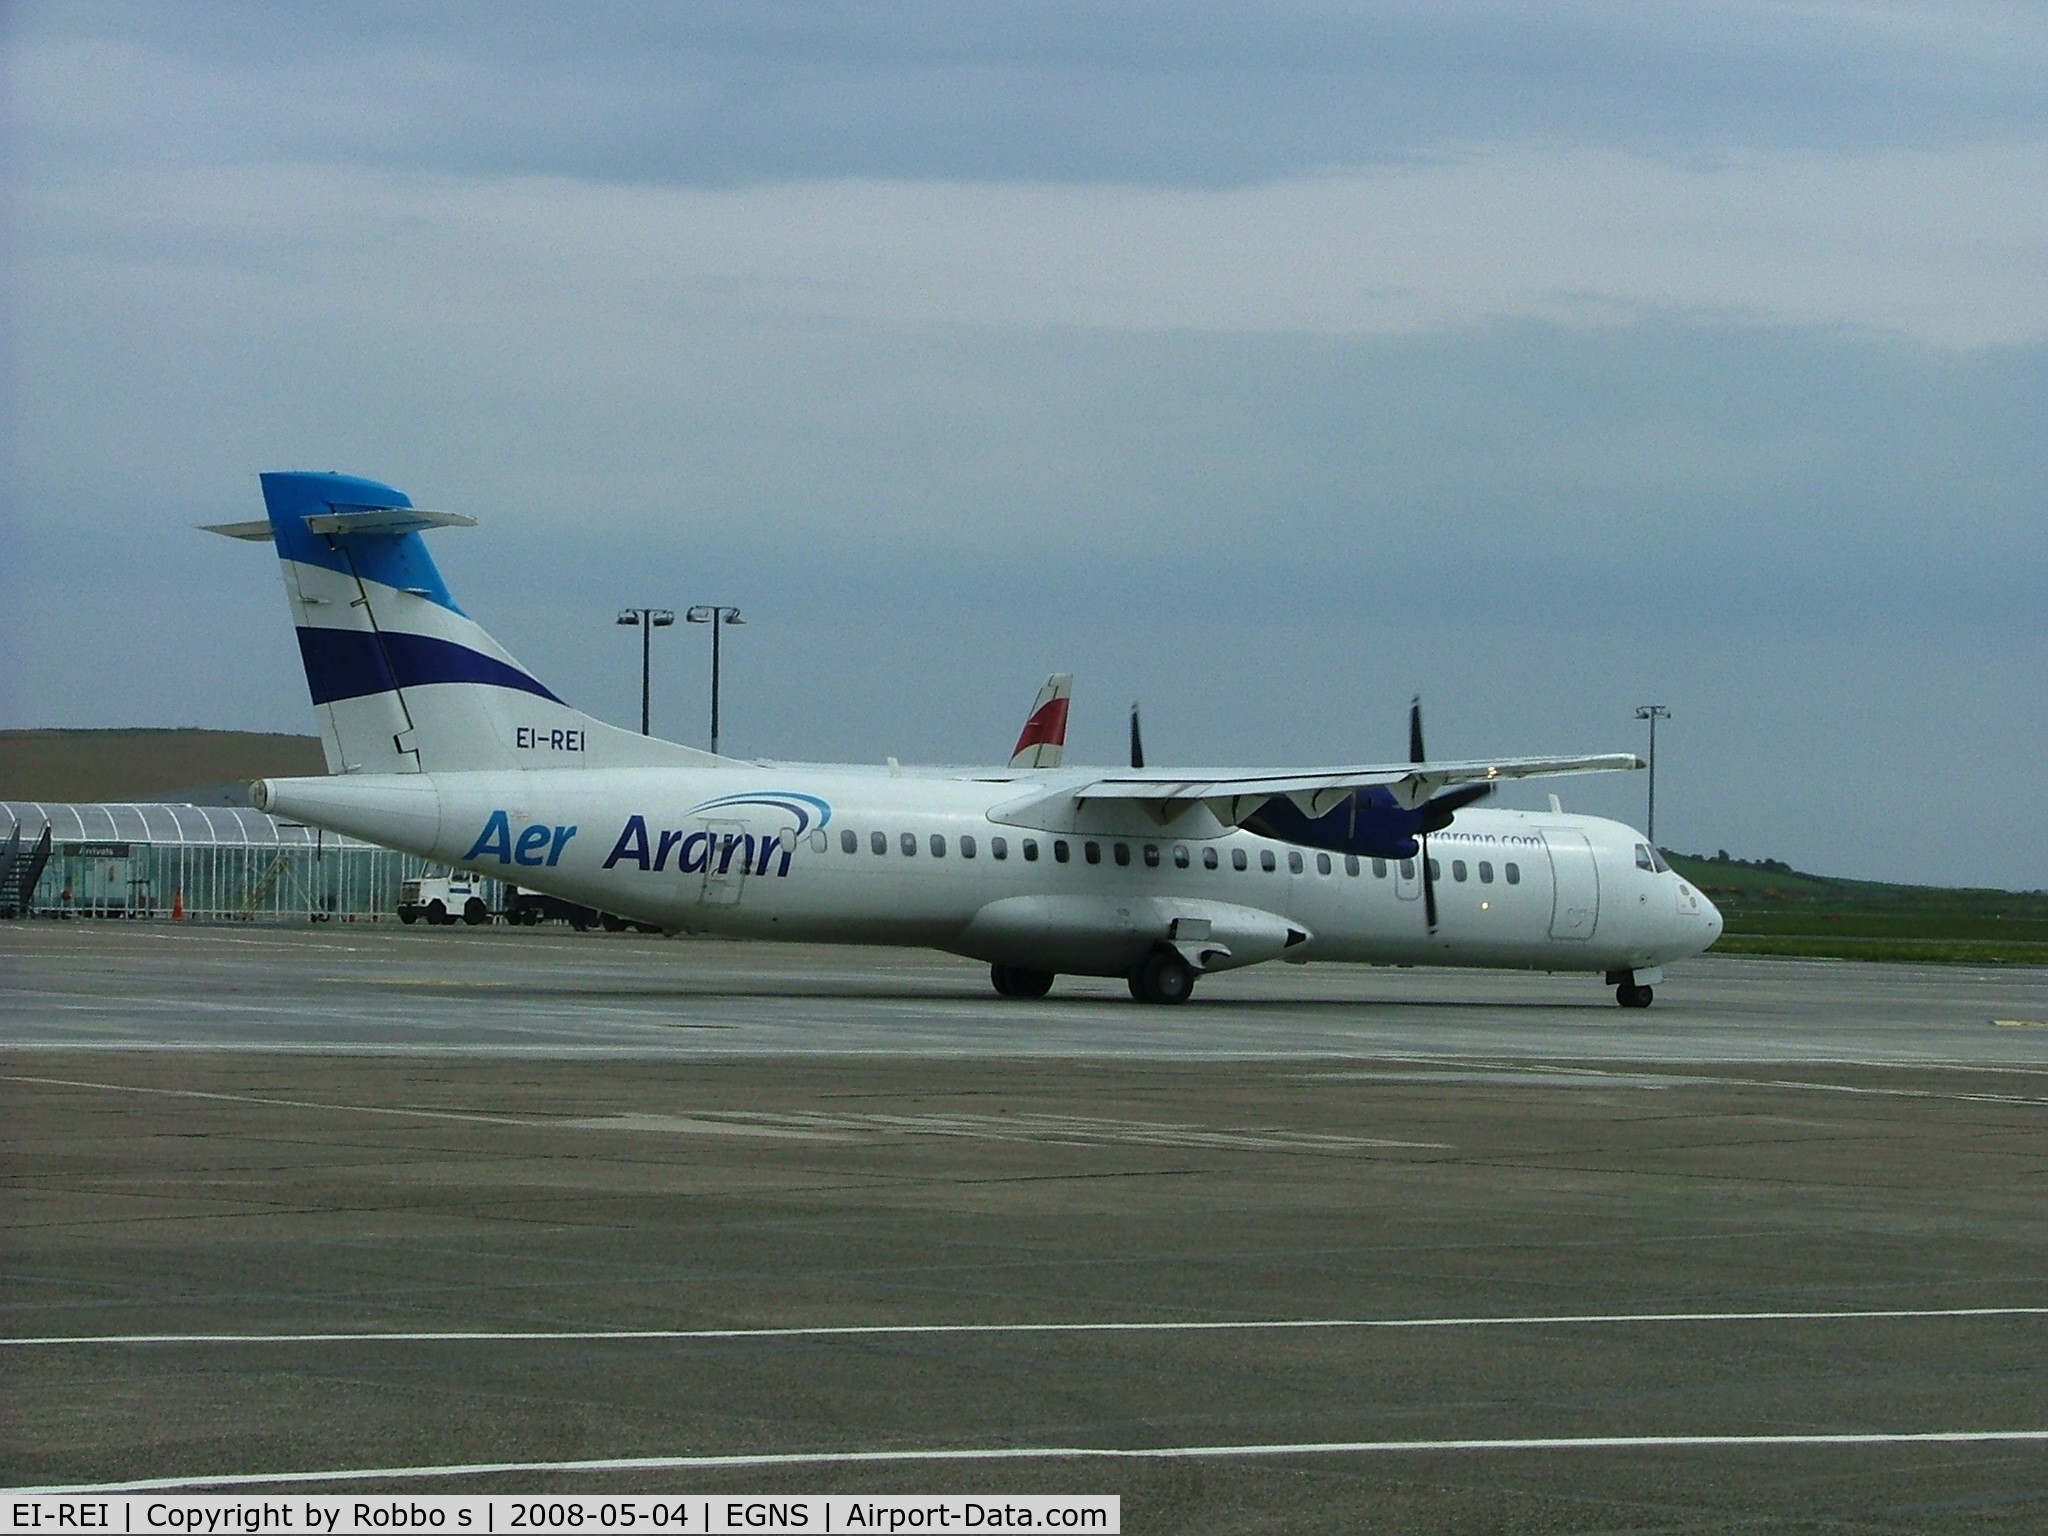 EI-REI, 1991 ATR 72-201 C/N 267, EI-REI at EGNS on lease to Euromanx.